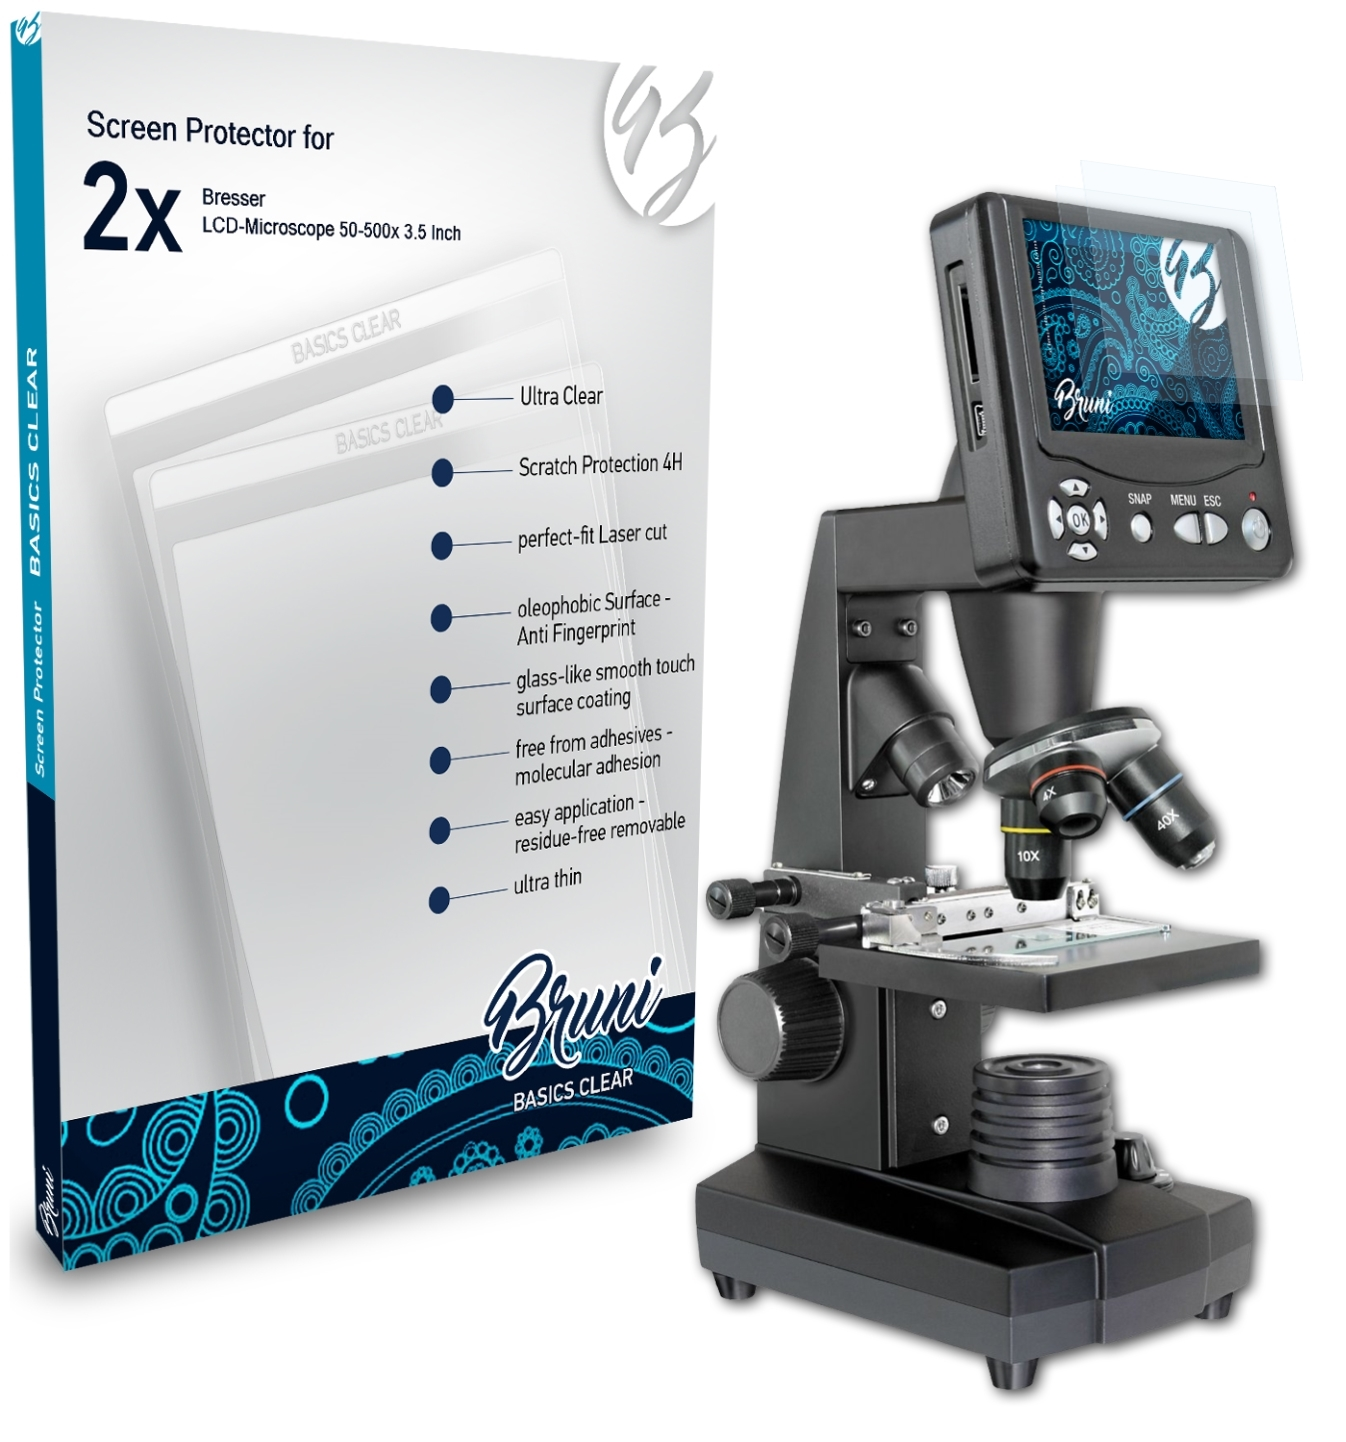 (3.5 Schutzfolie(für LCD-Microscope Bresser BRUNI 2x Inch)) Basics-Clear 50-500x